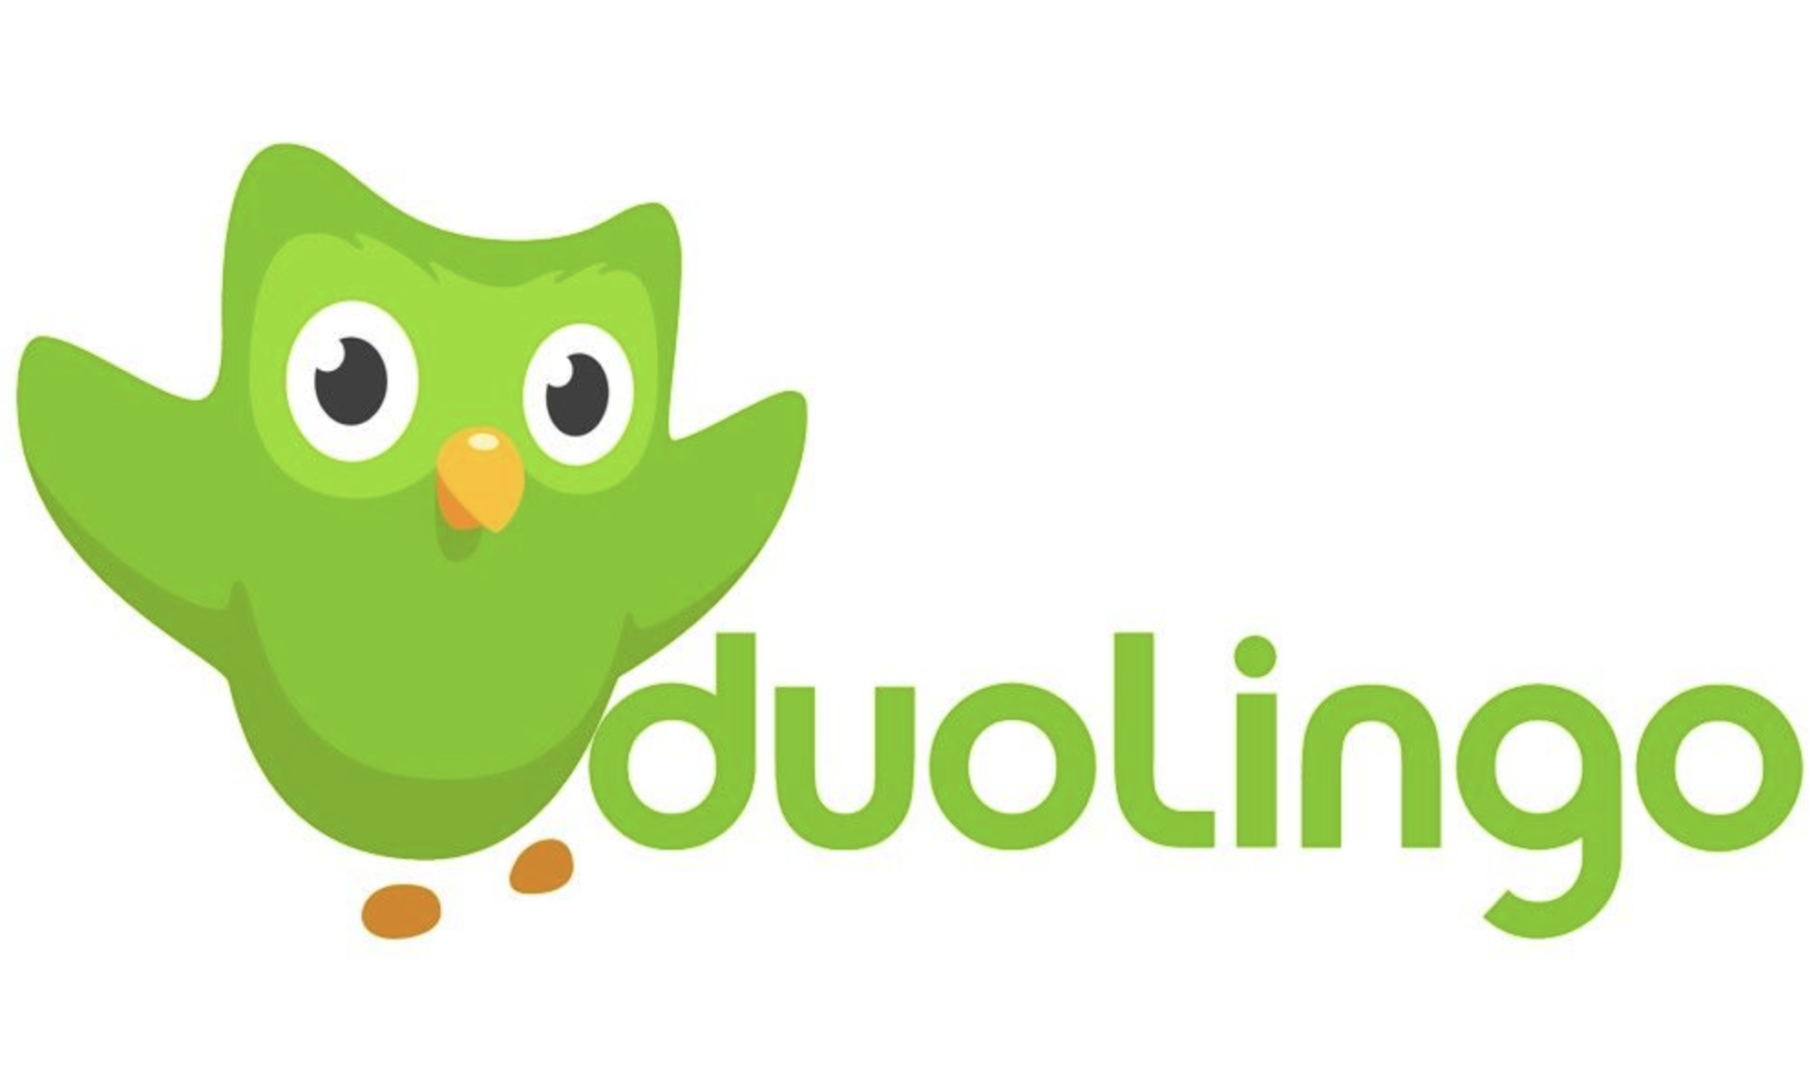 Птица дуолинго. Duolingo. Duolingo рисунок. Дуолинго логотип. Duolingo приложение.